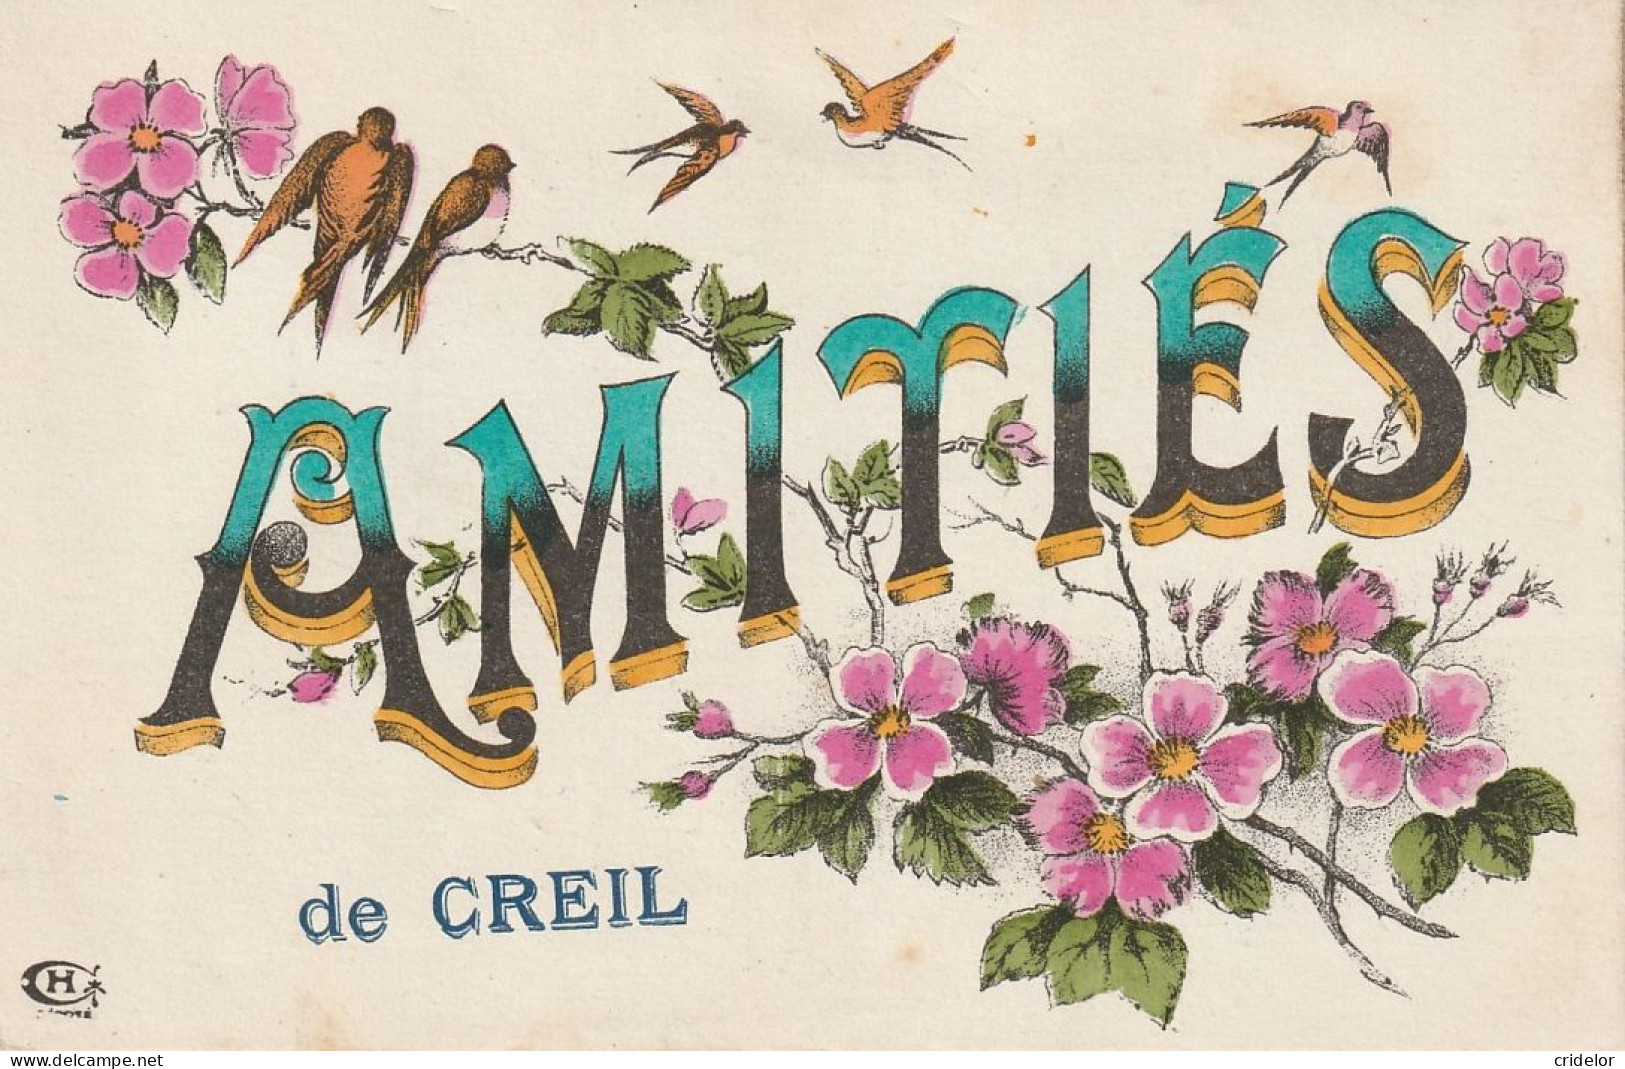 60 - CREUIL - AMITIEES DE - BELLE FANTAISIE - FLEURS HIRONDELLES - 1918 - Creil